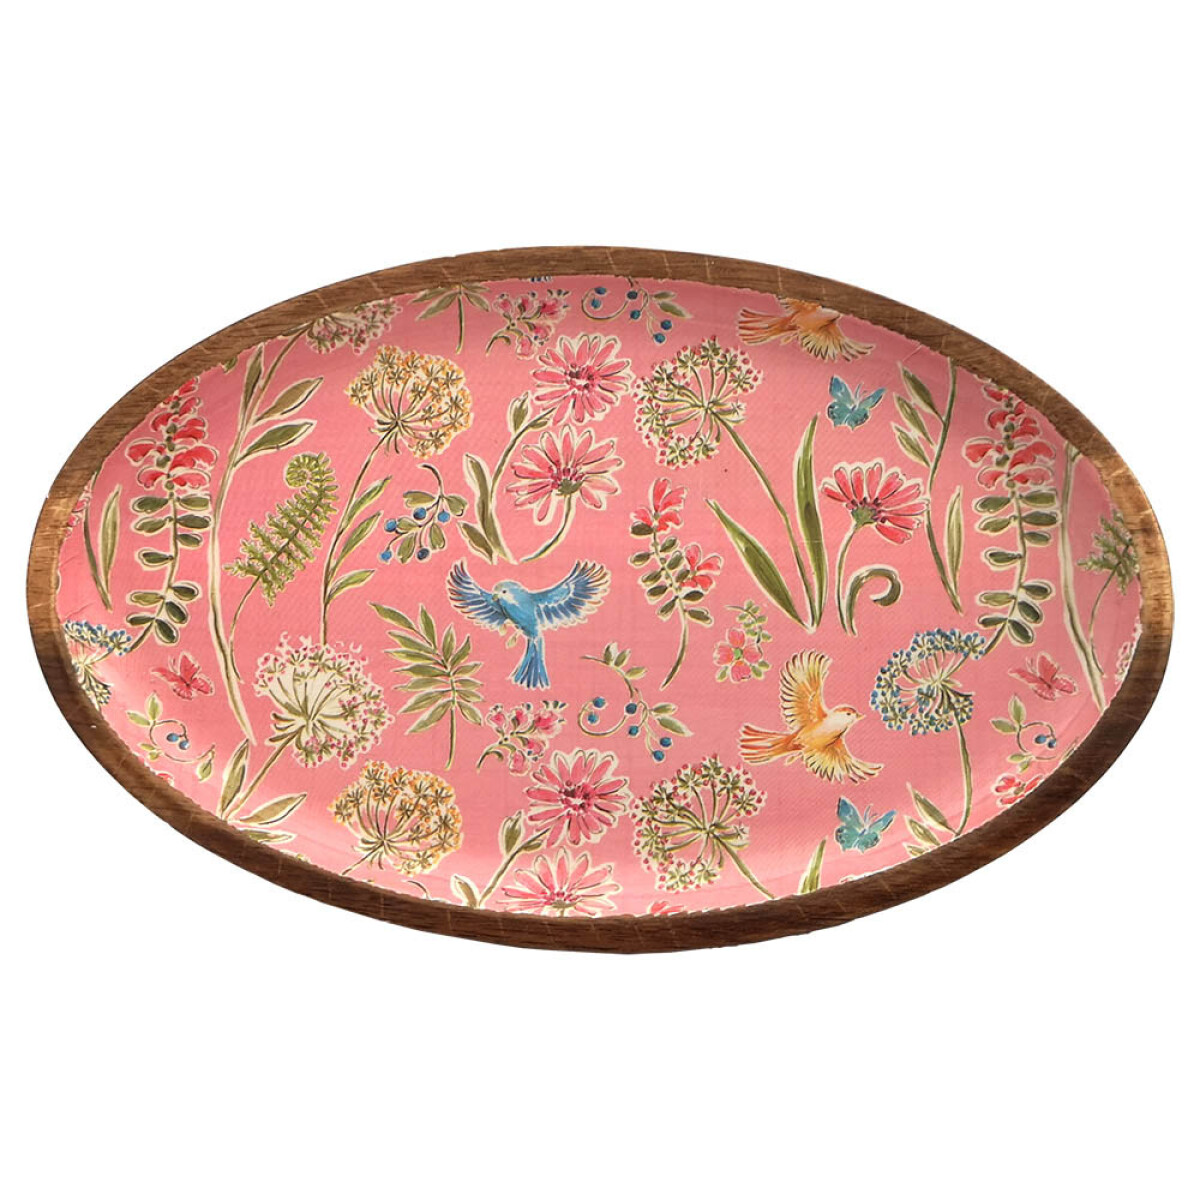 Plato oval de Madera de 20 x 12,5 cm - Varios Diseños - Pajaros Rosa 